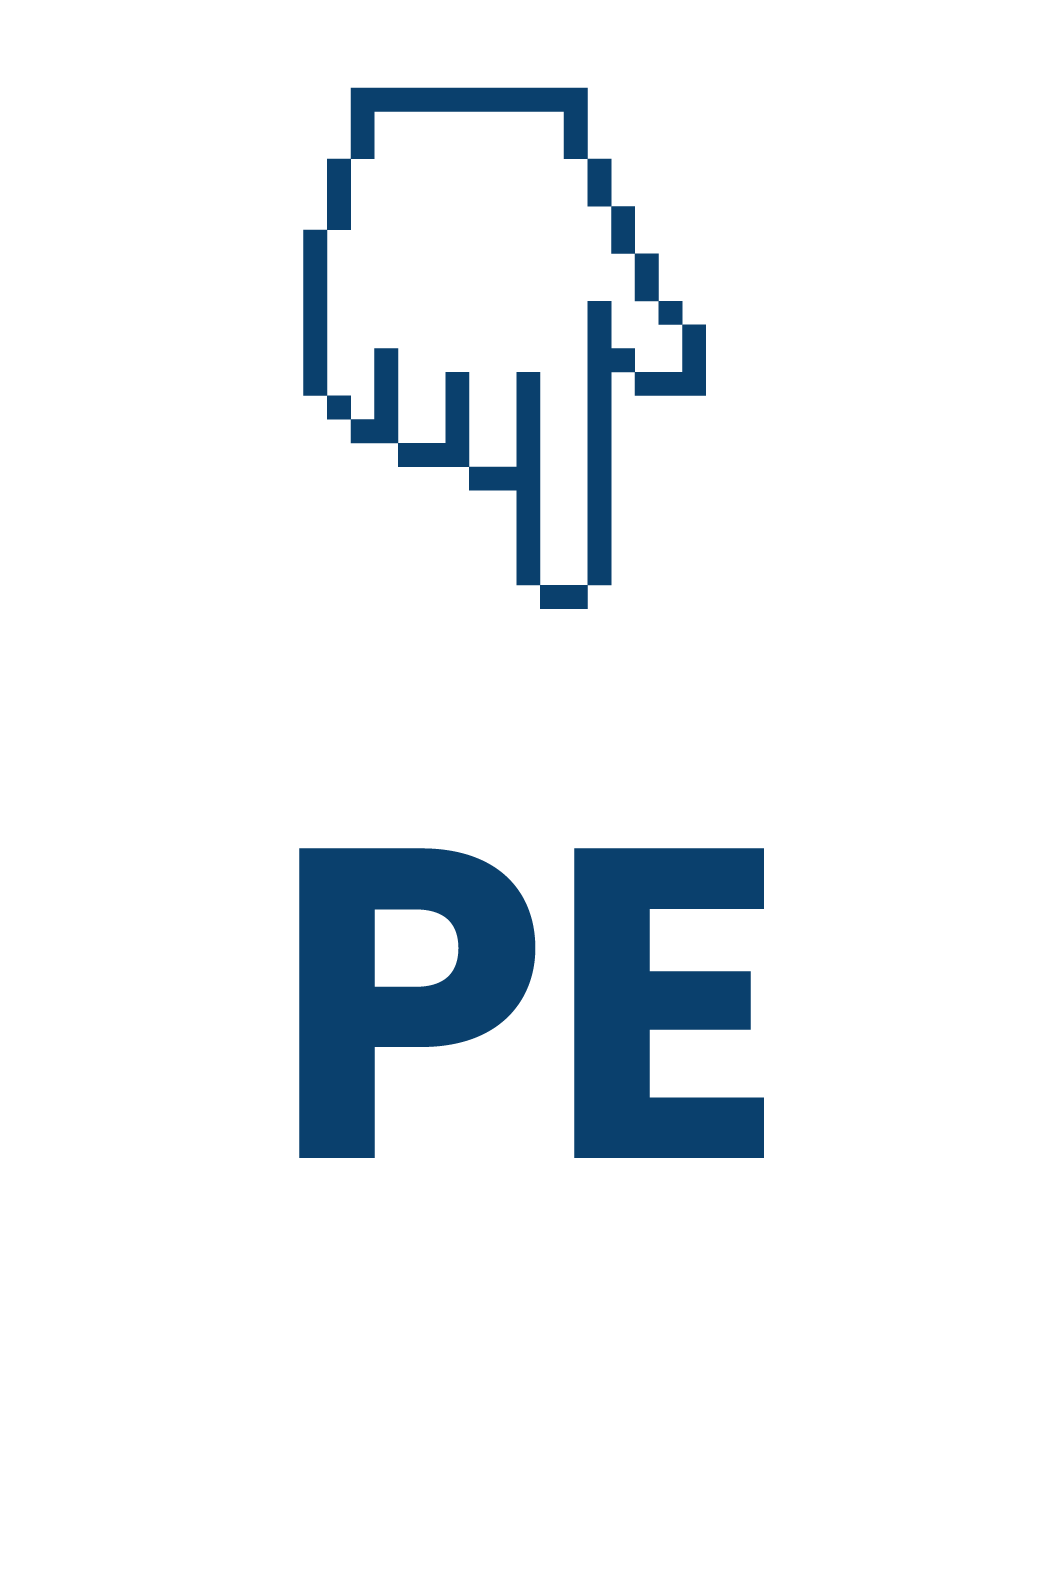 El logo de la herramienta, es una mano simulando un clic sobre una urna electoral con las siglas P; E de PubliElectoral